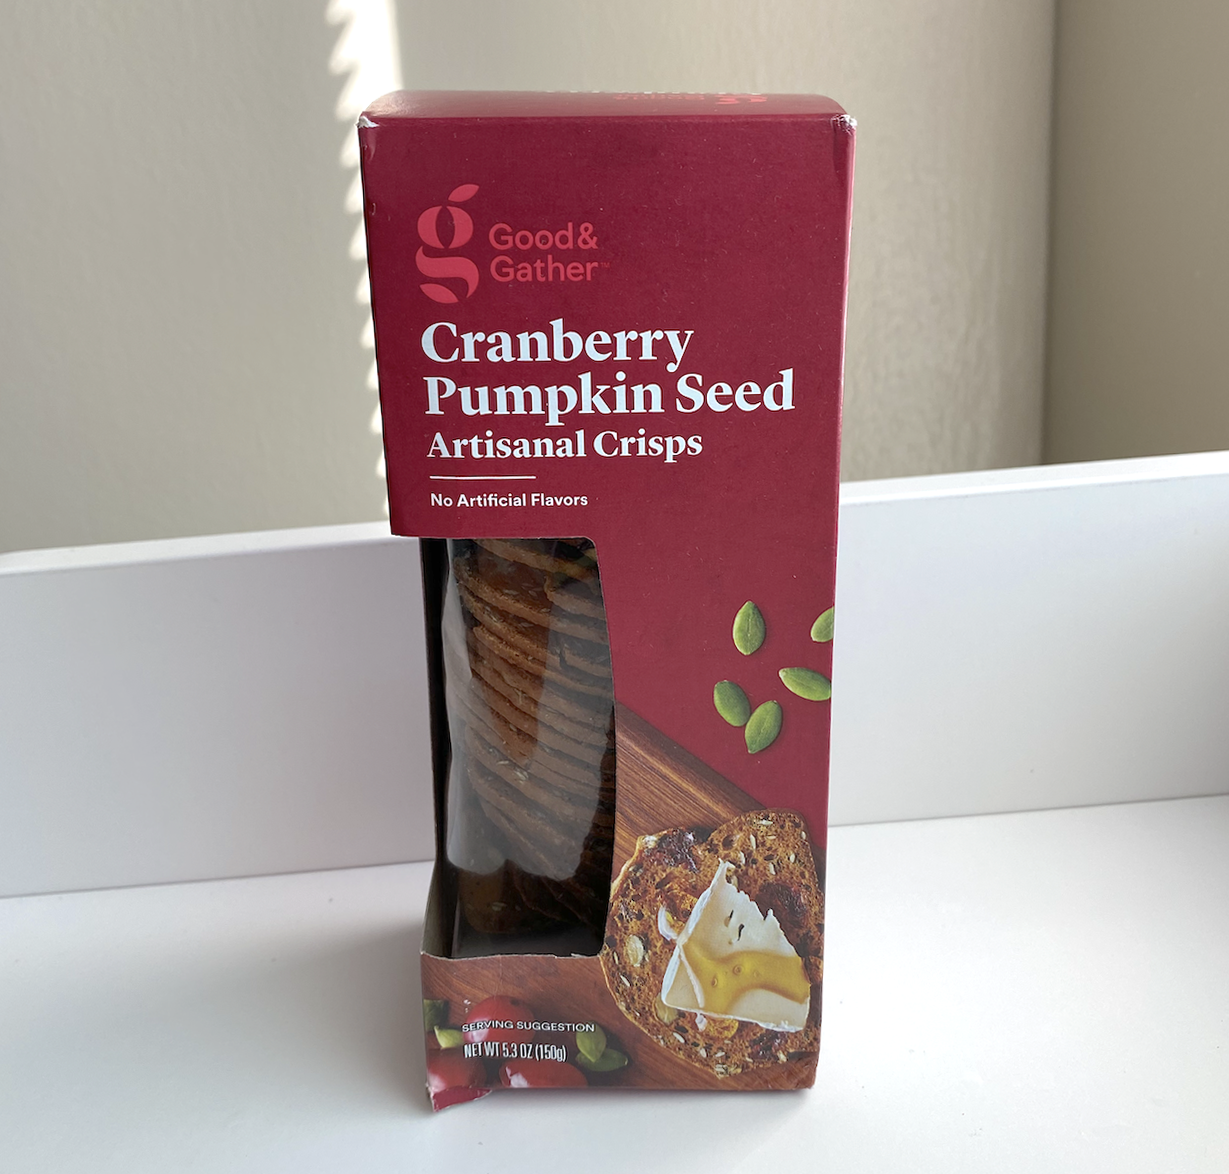 Cranberry Pumpkin Seed Artisanal Crisps